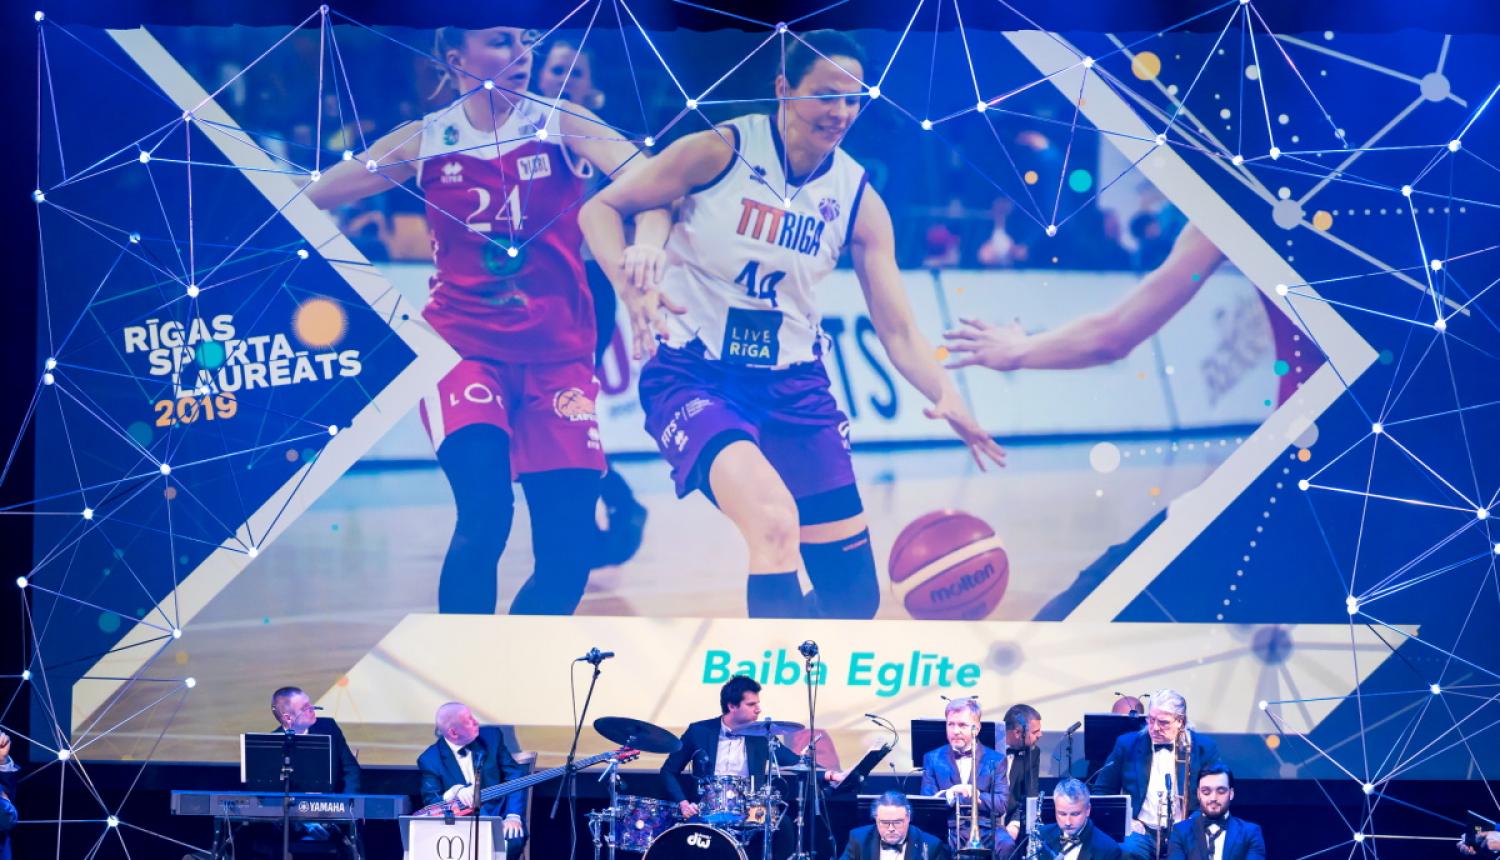 Pasākums Rīgas sporta laureāts 2019